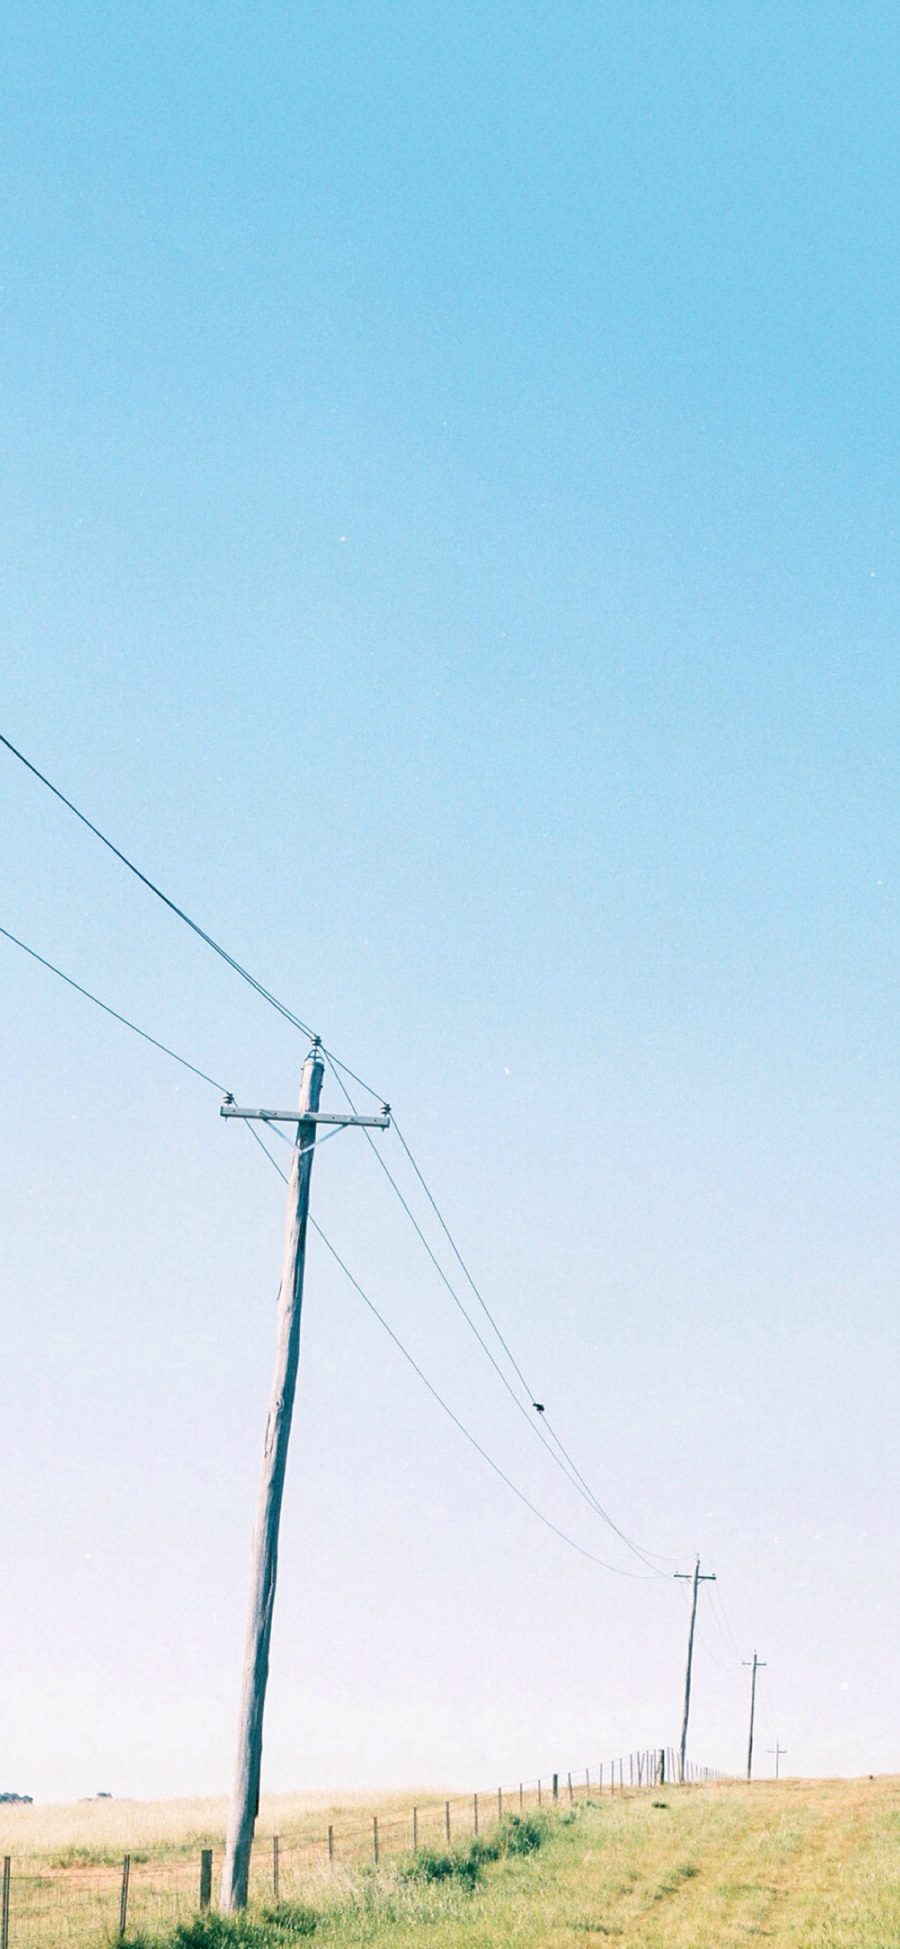 [2436×1125]电线杆 风景 田野 蓝天 苹果手机壁纸图片